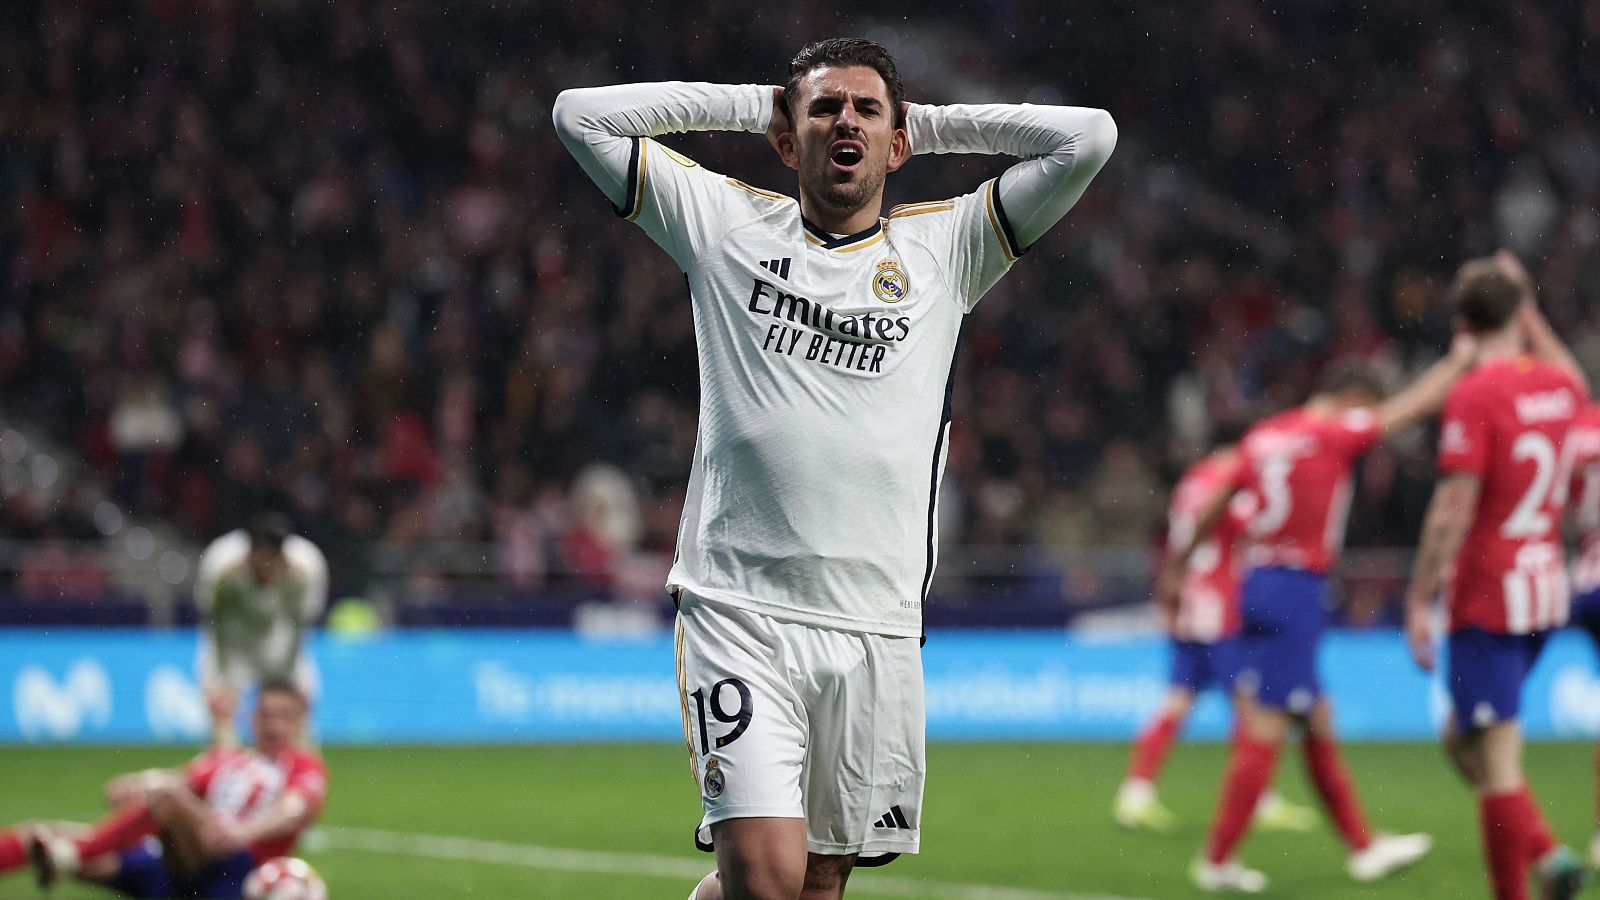 Copa del Rey | Gol anulado al Real Madrid en la prórroga